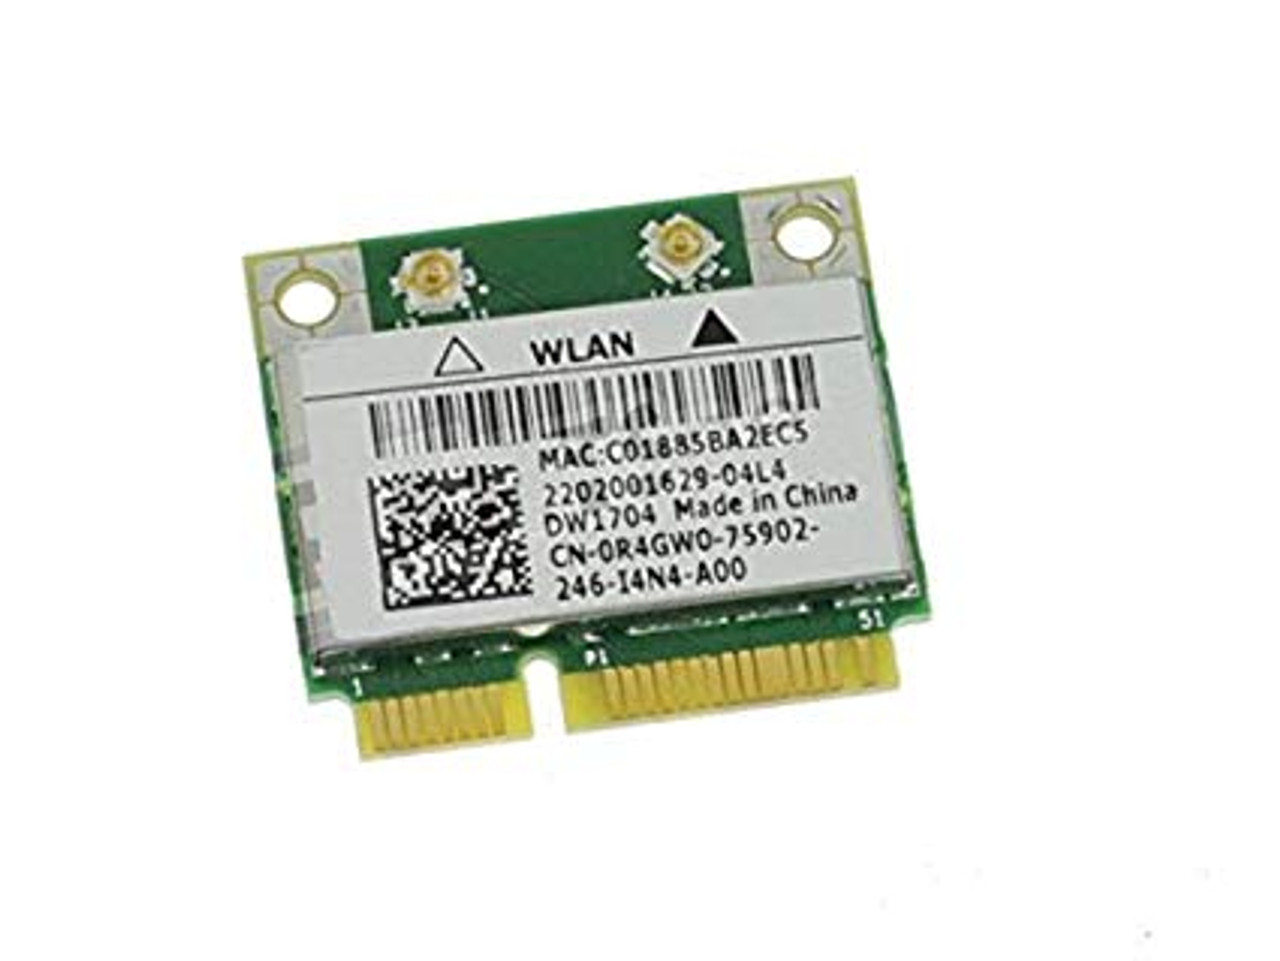 Carte WIFI Dell Wireless DW1506 - Carte mini PCI Express - MNRG4 - Trade  Discount